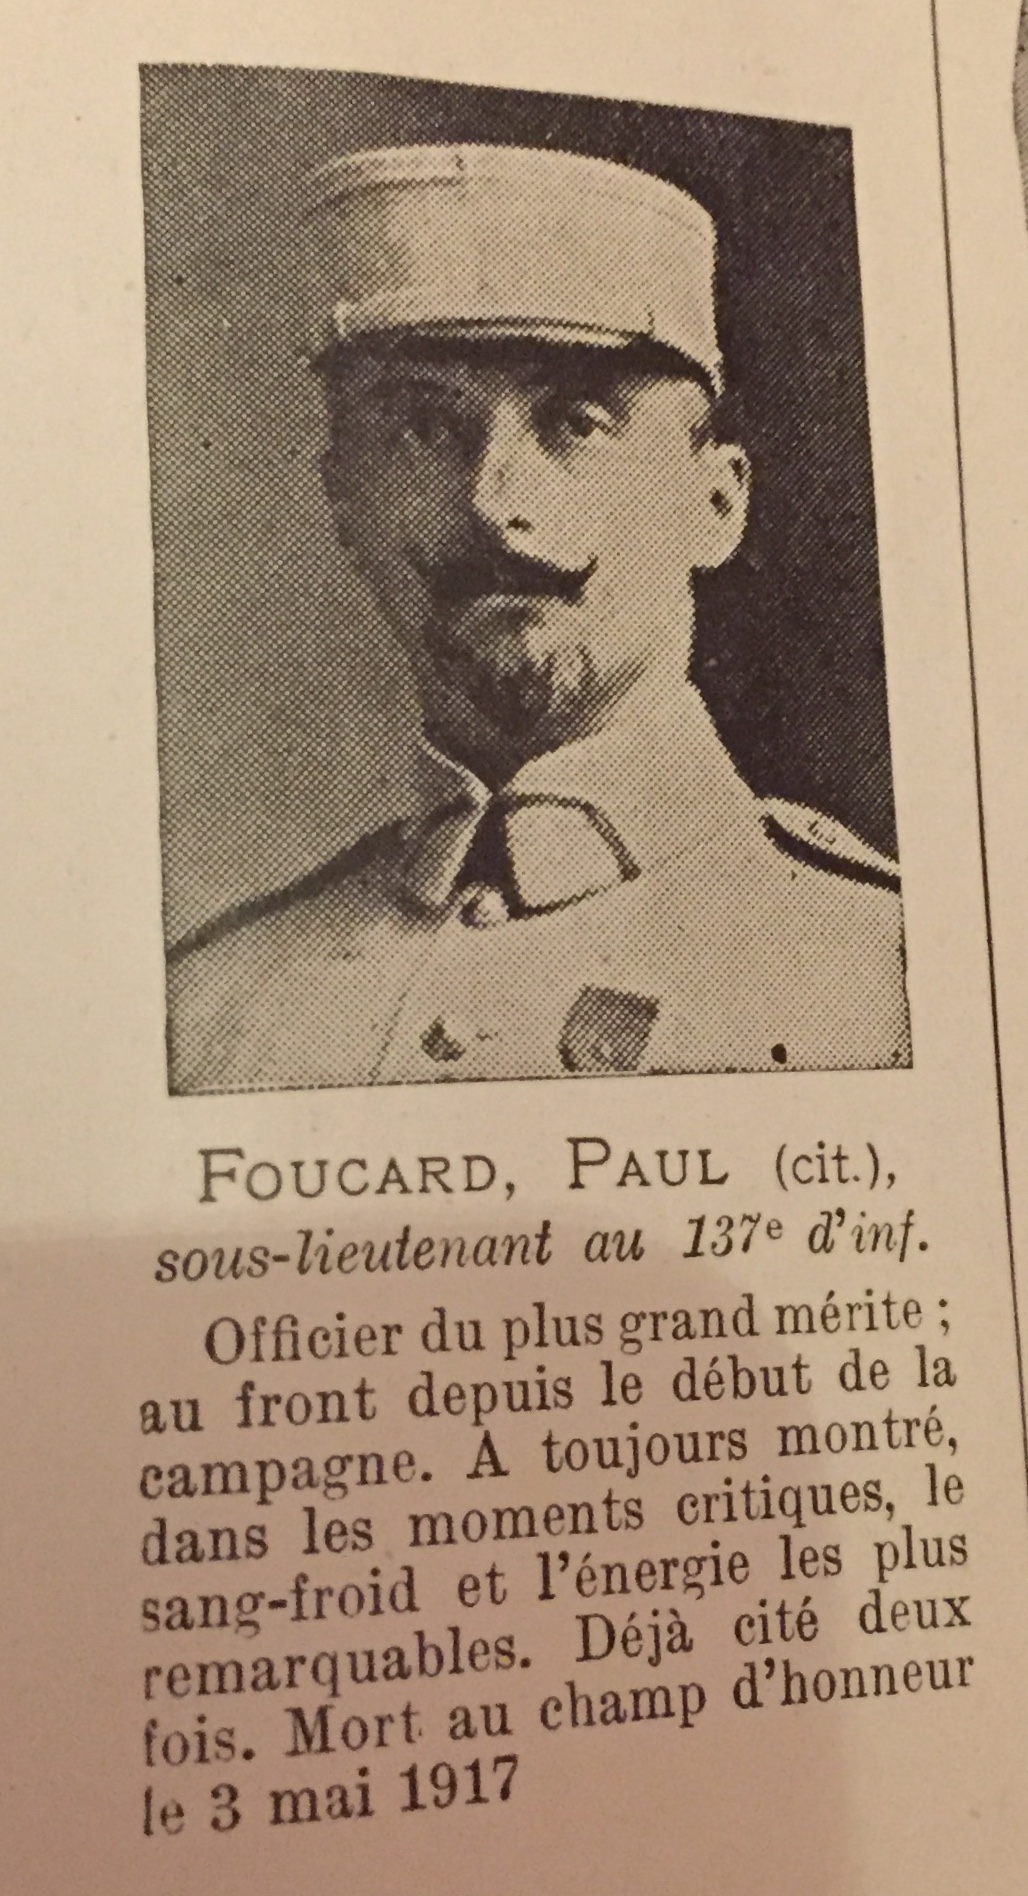 Foucart Paul, portrait et citation.